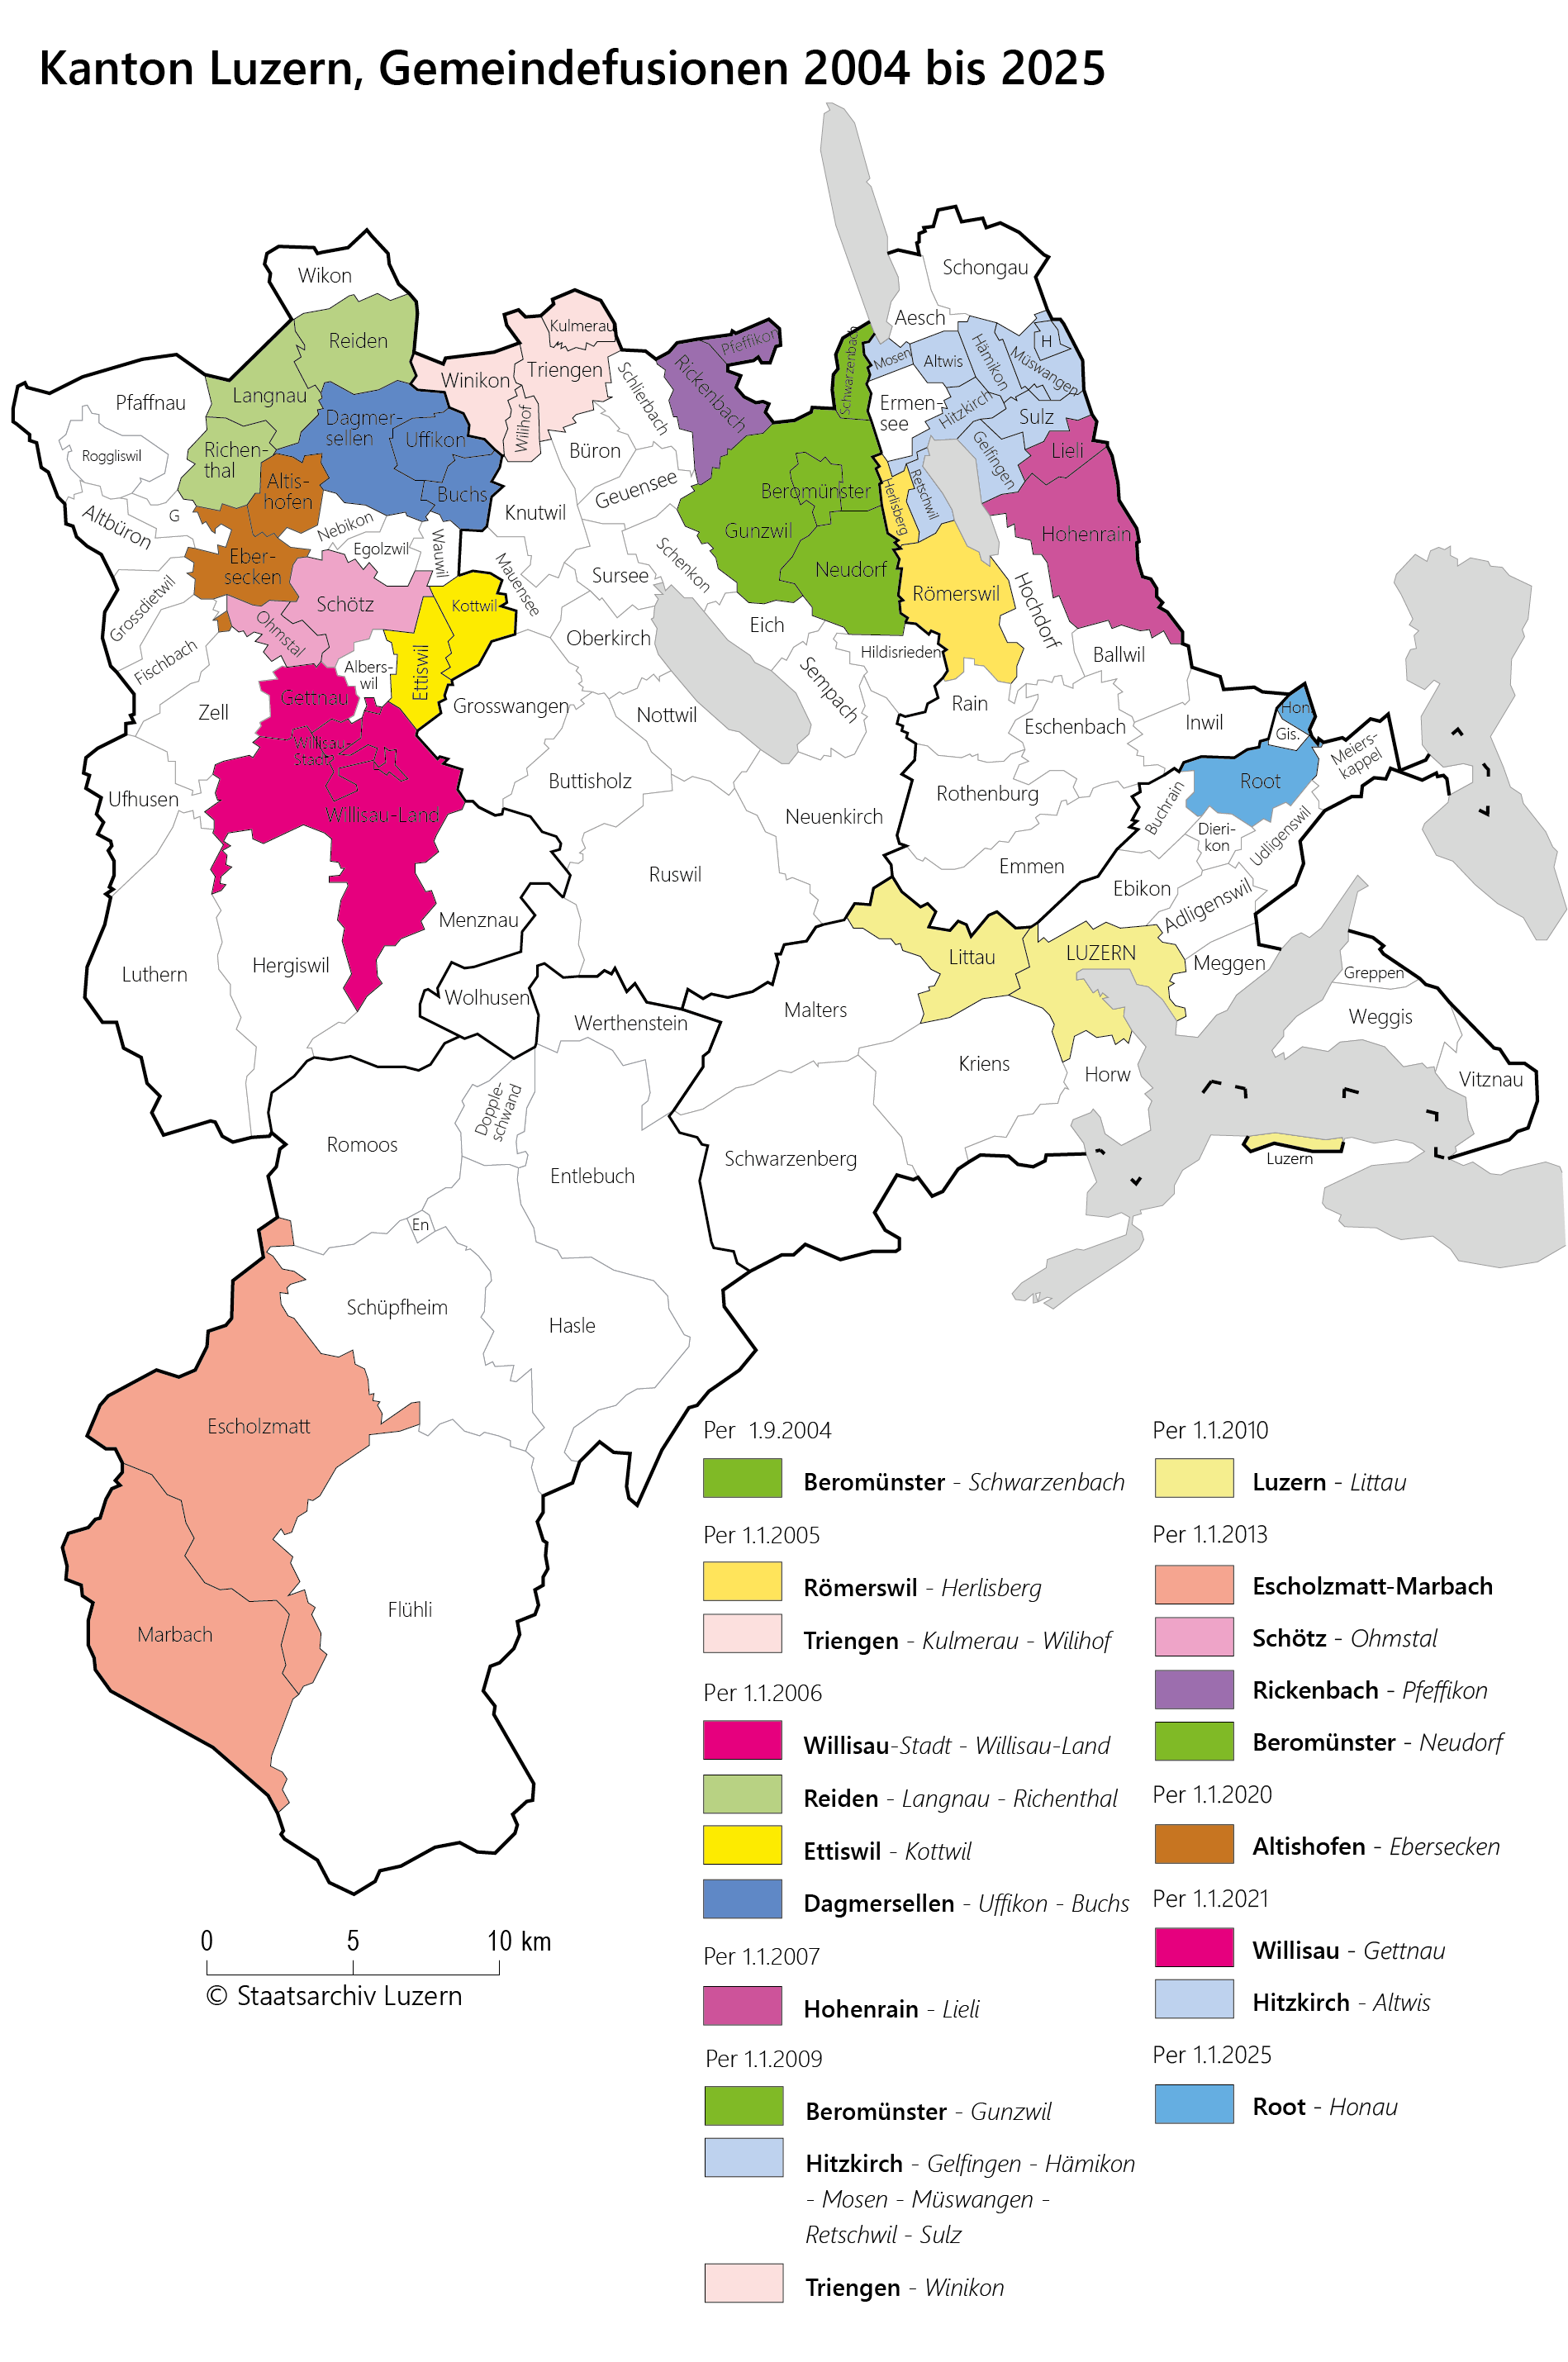 Luzern Gemeindefusionen bis 2025